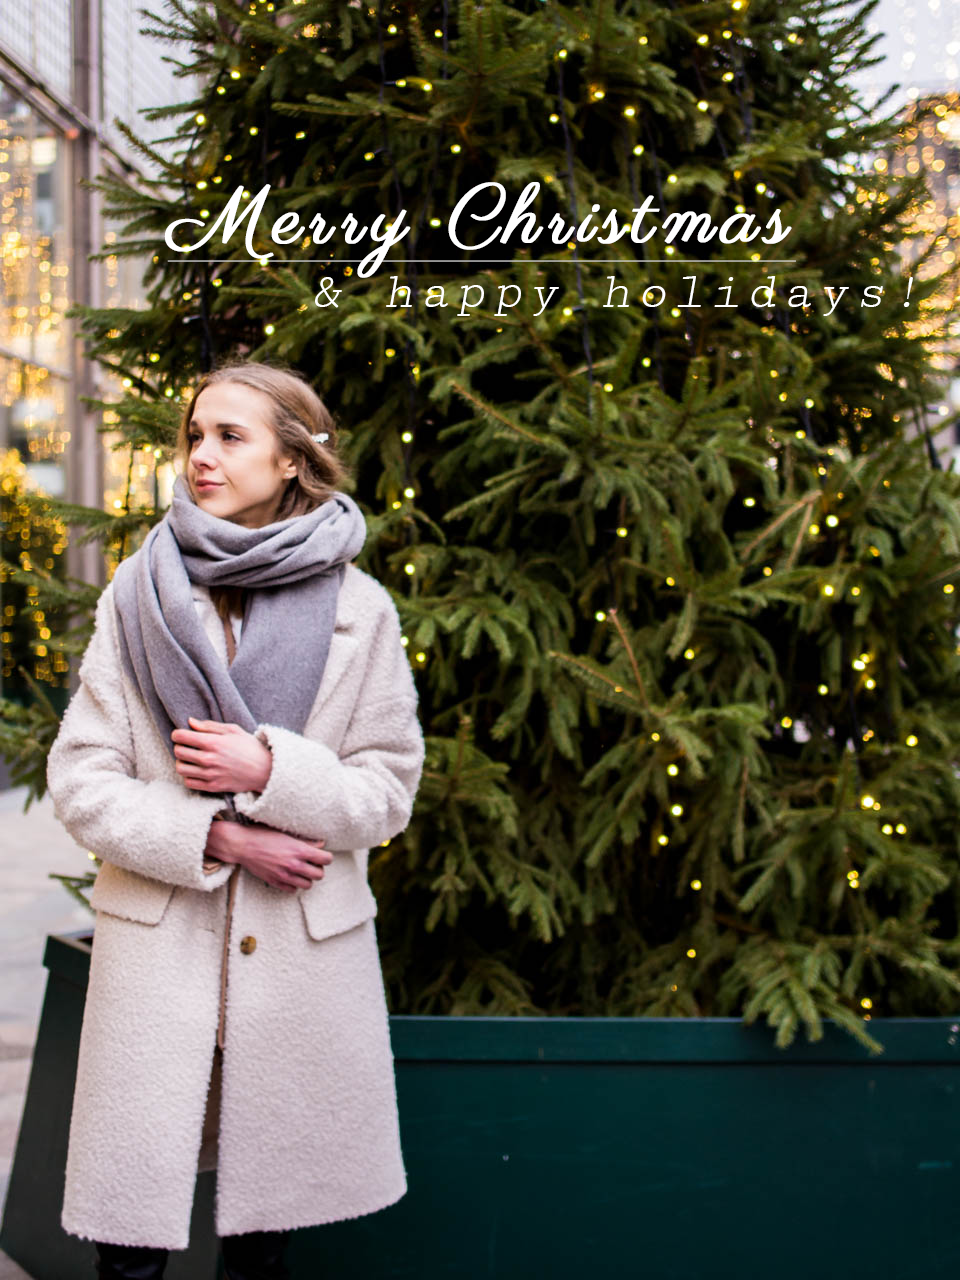 Season's greetings and a Christmas card from Helsinki, Finland - Virtuaalinen joulukortti, muotiblogi, Helsinki